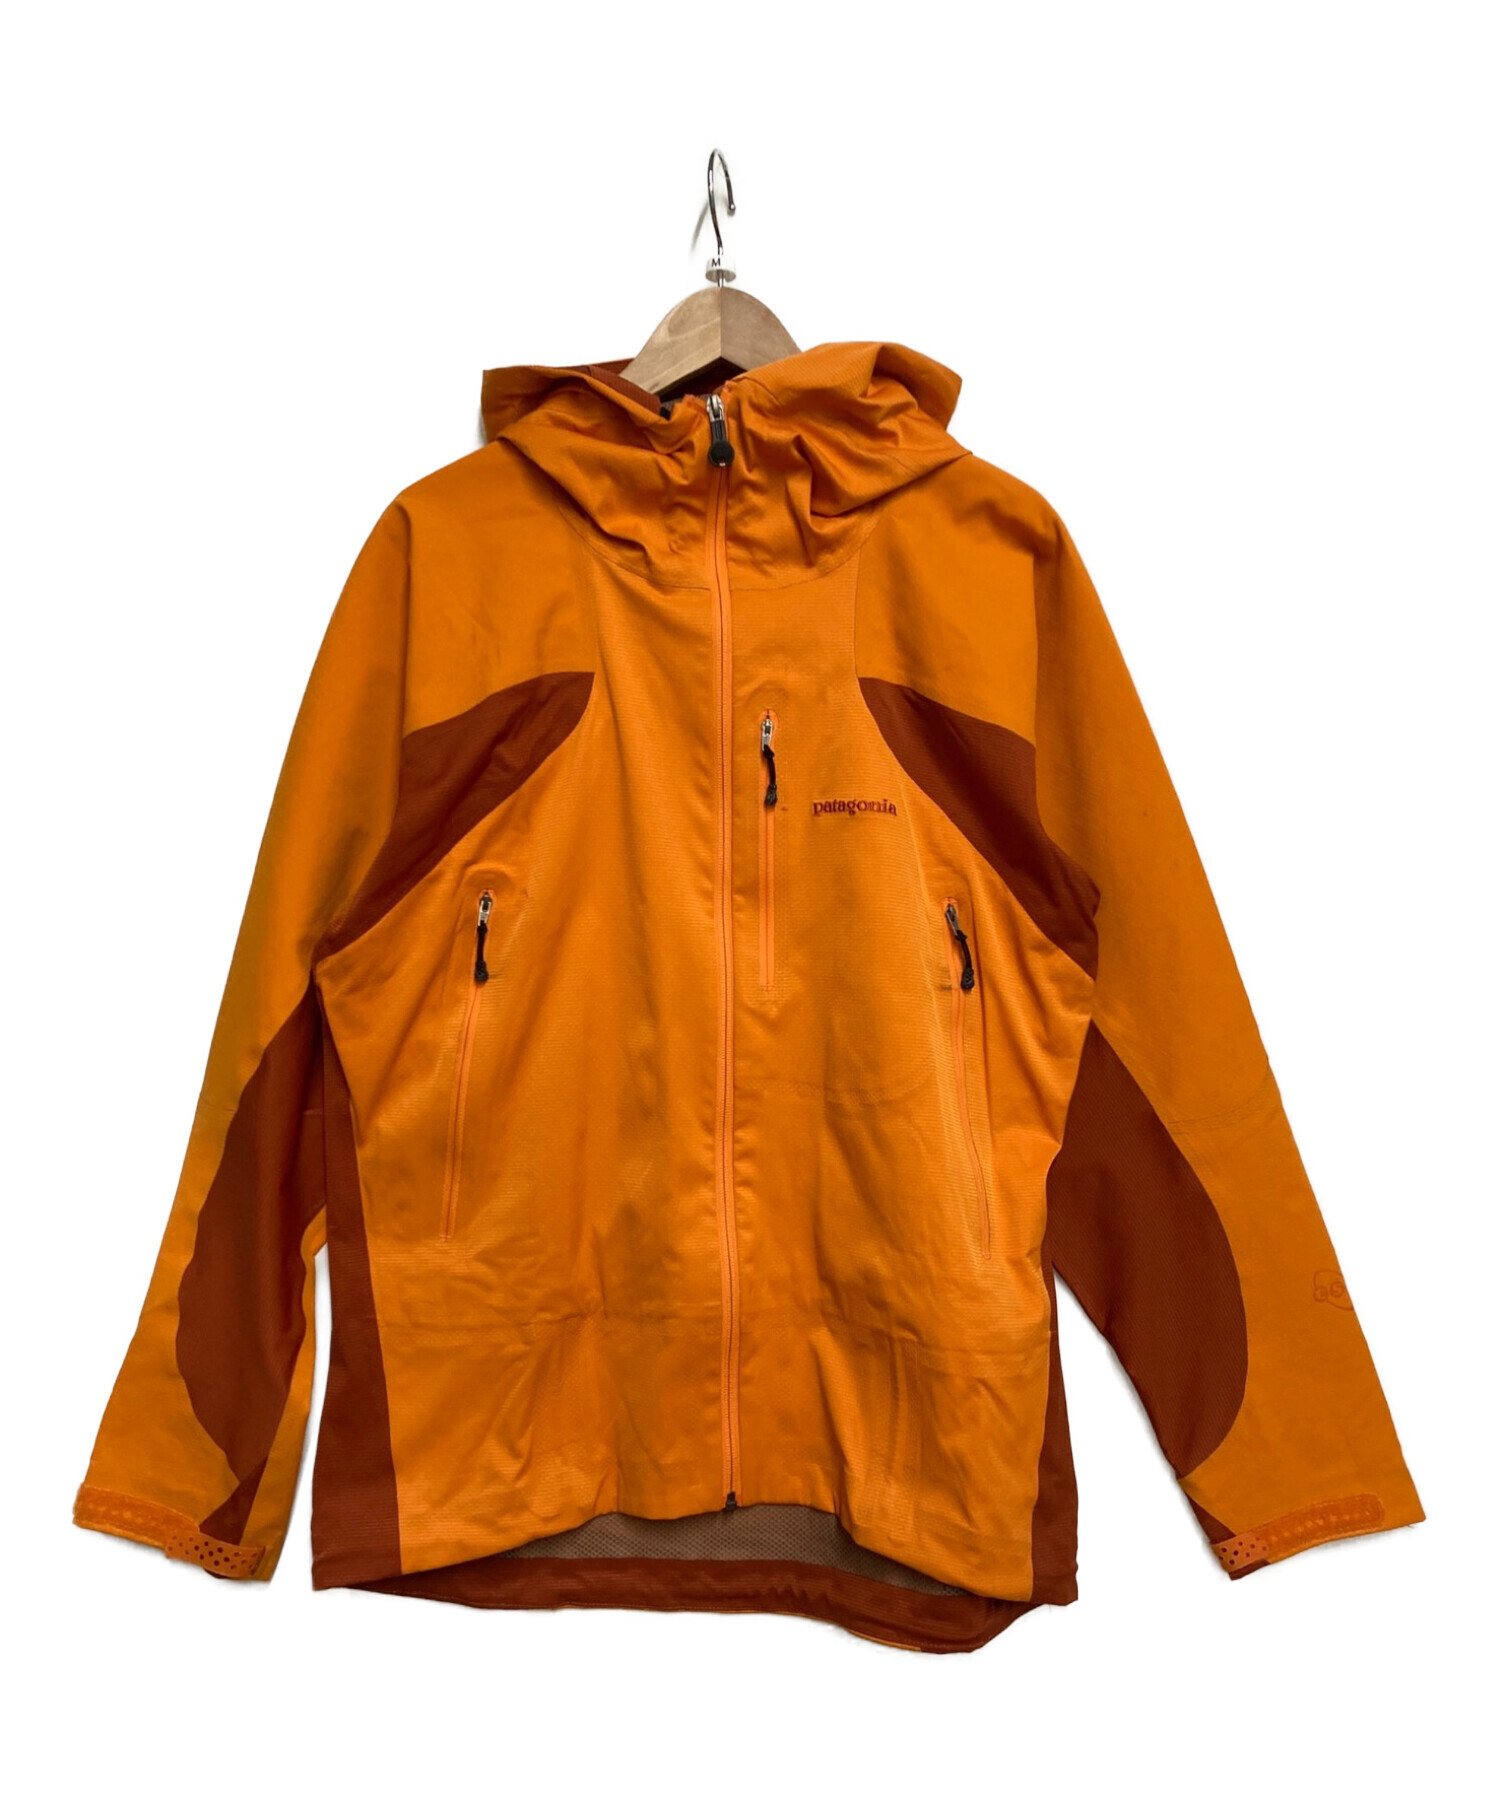 Patagonia (パタゴニア) ディメンション ジャケット イエロー×オレンジ サイズ:M